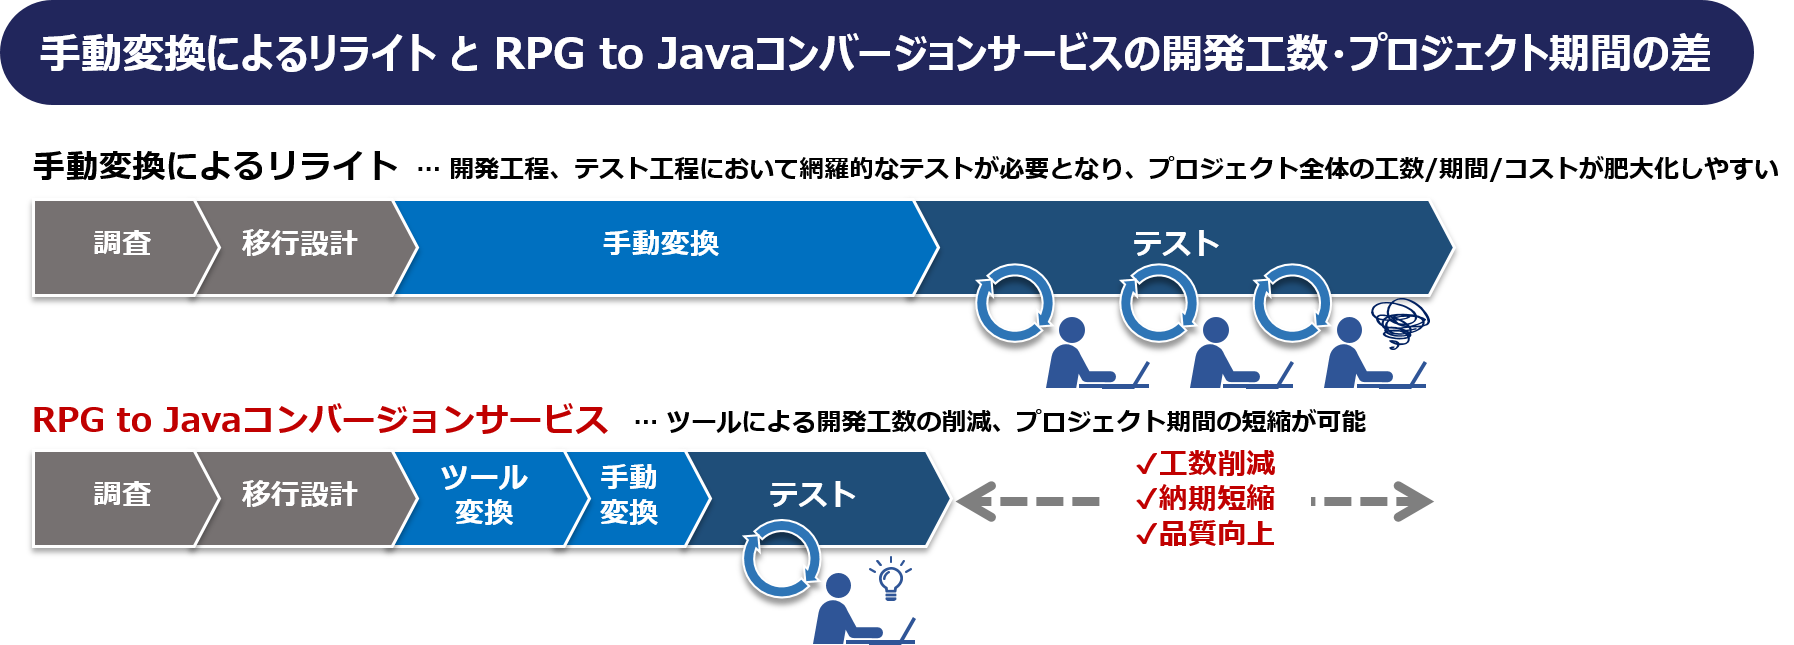 手動変換によるリライトとRPG to Javaコンバージョンサービスの開発工数・プロジェクト期間の差